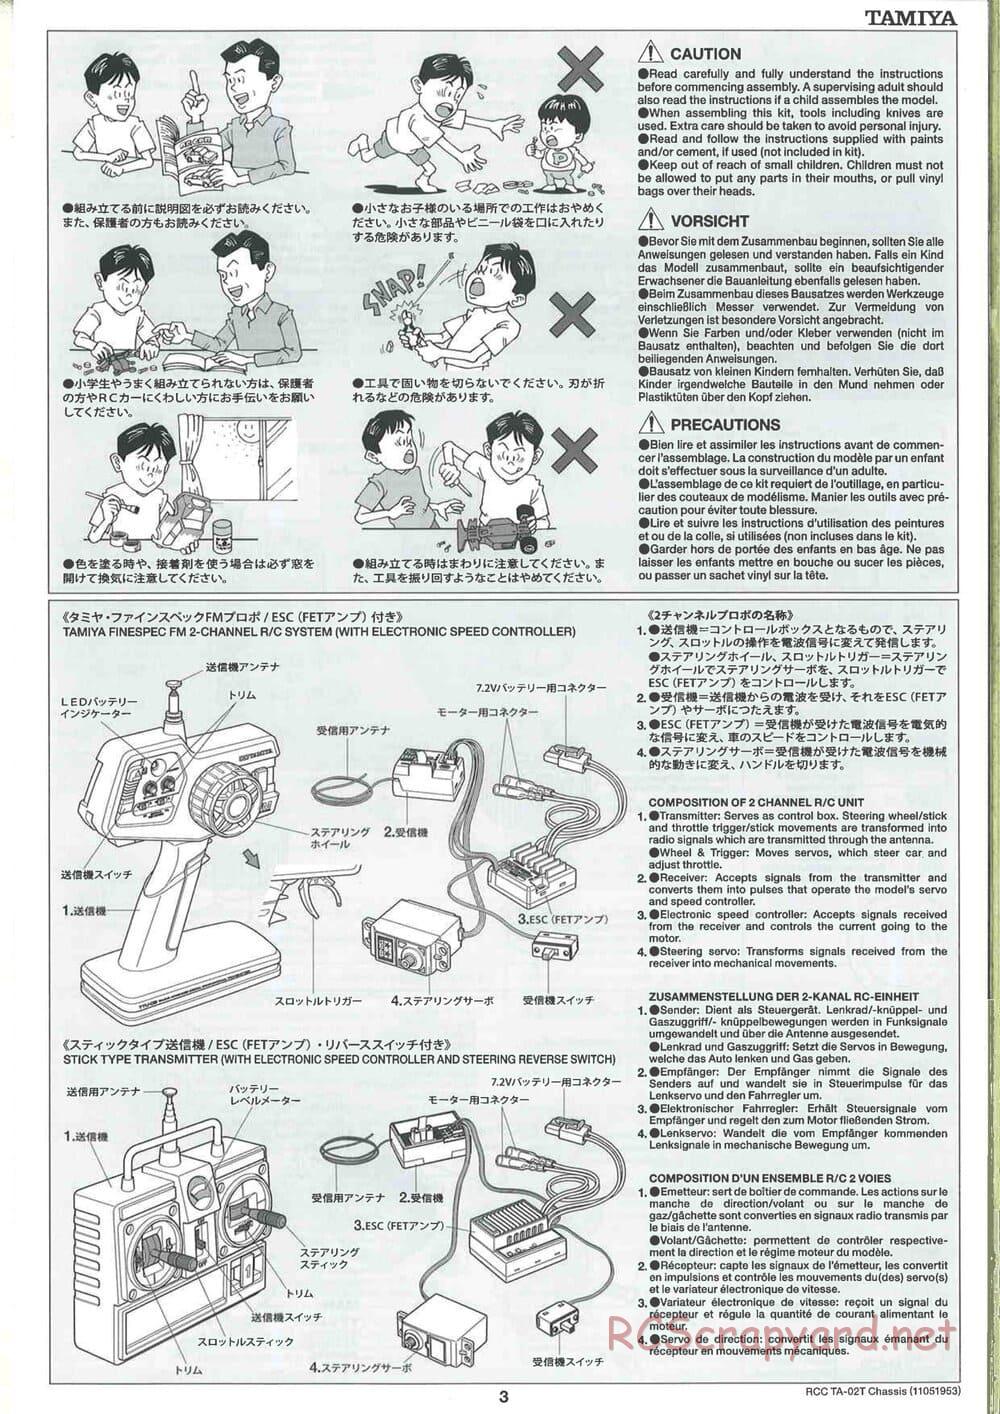 Tamiya - TA-02T Chassis - Manual - Page 3